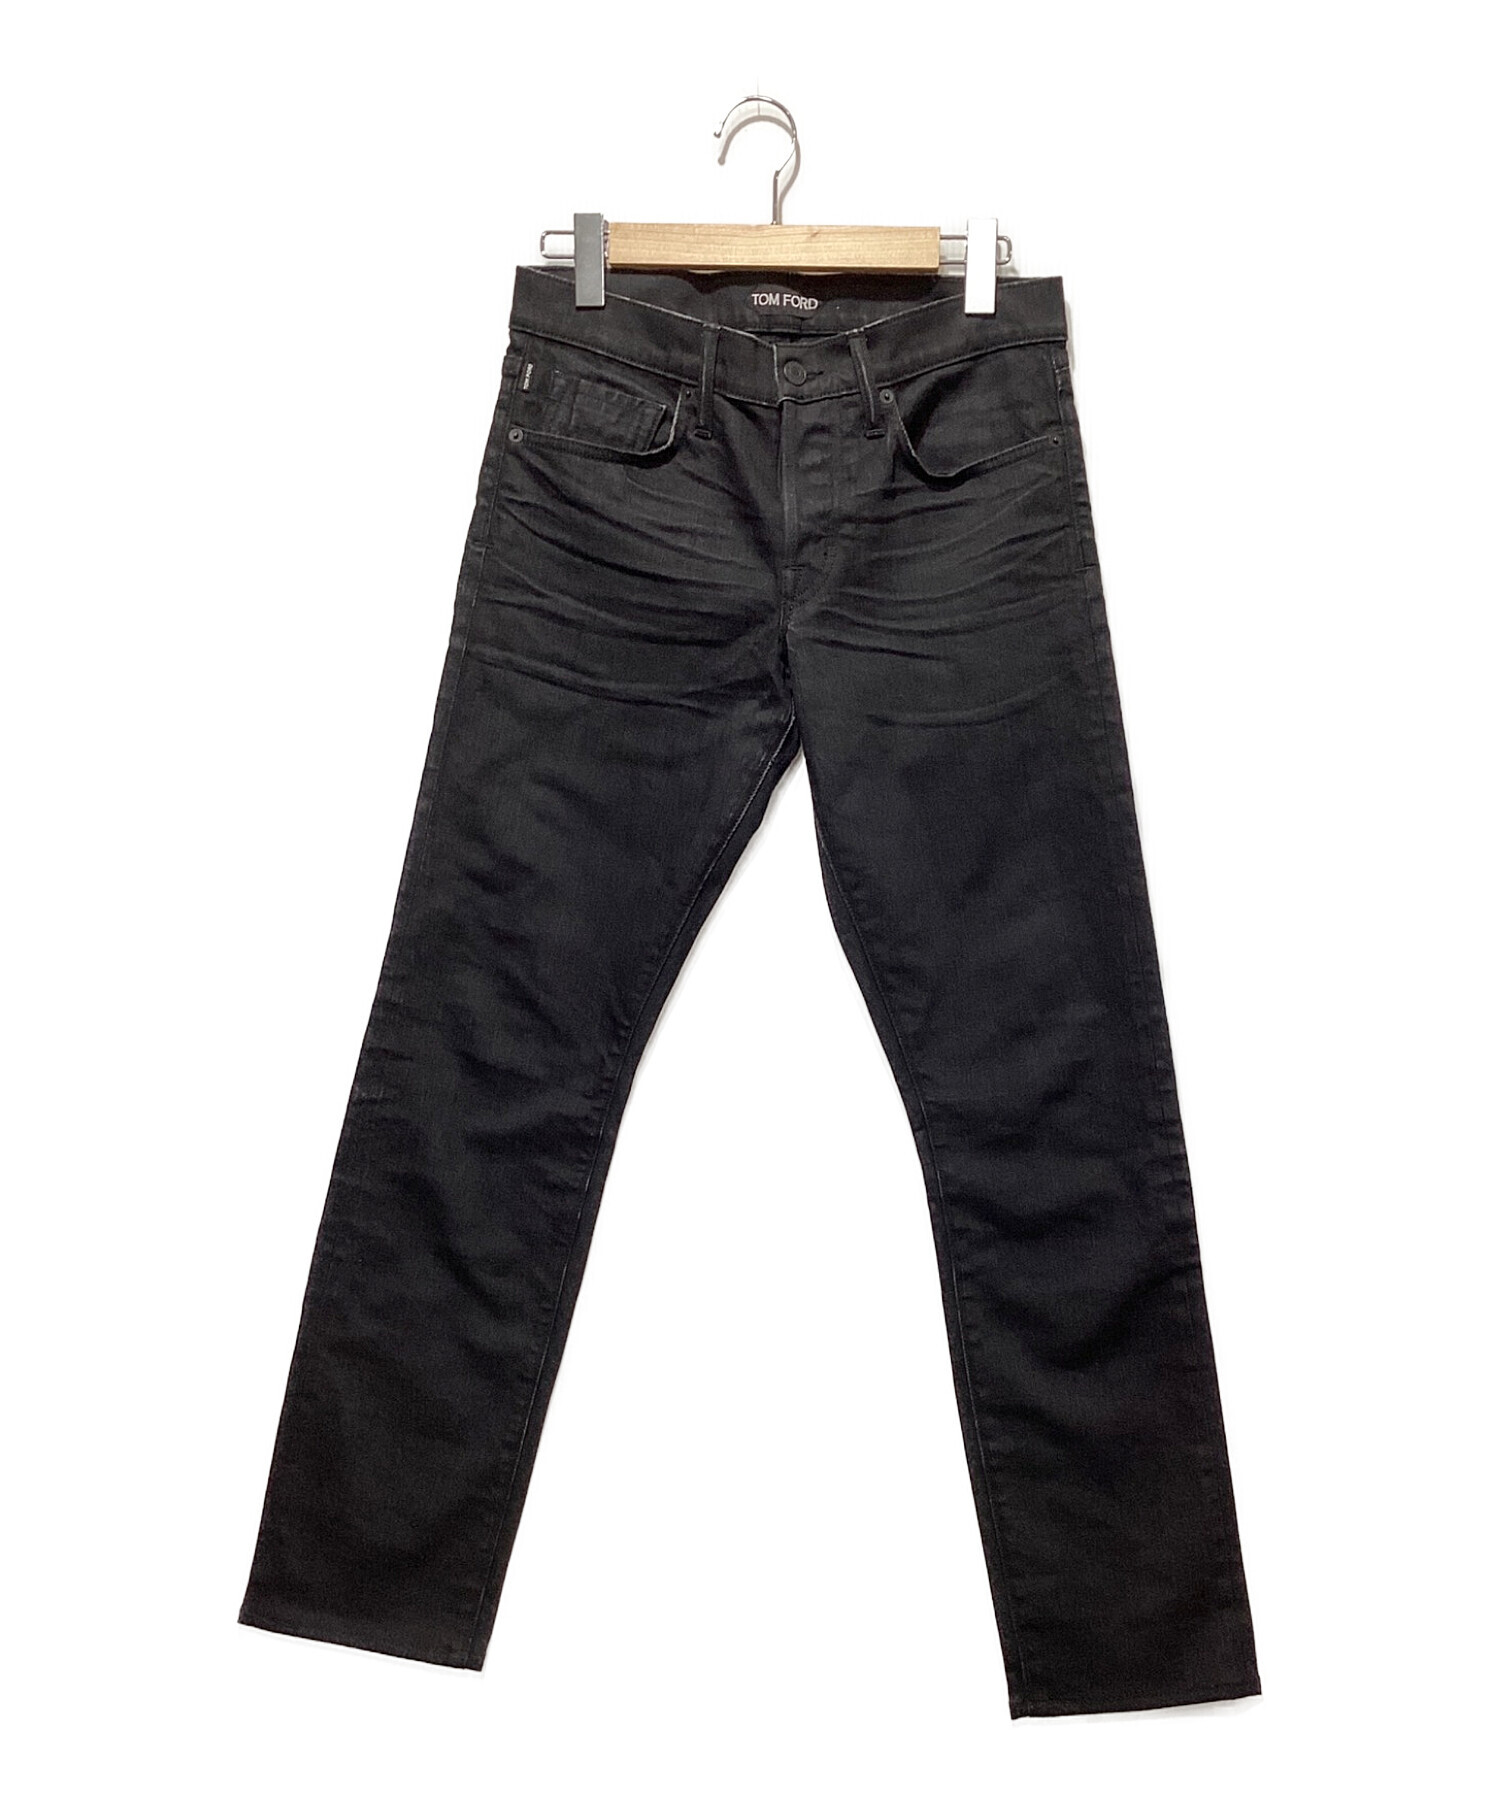 TOM FORD (トムフォード) TFD001 Slim Fit Jeans ブラック サイズ:30